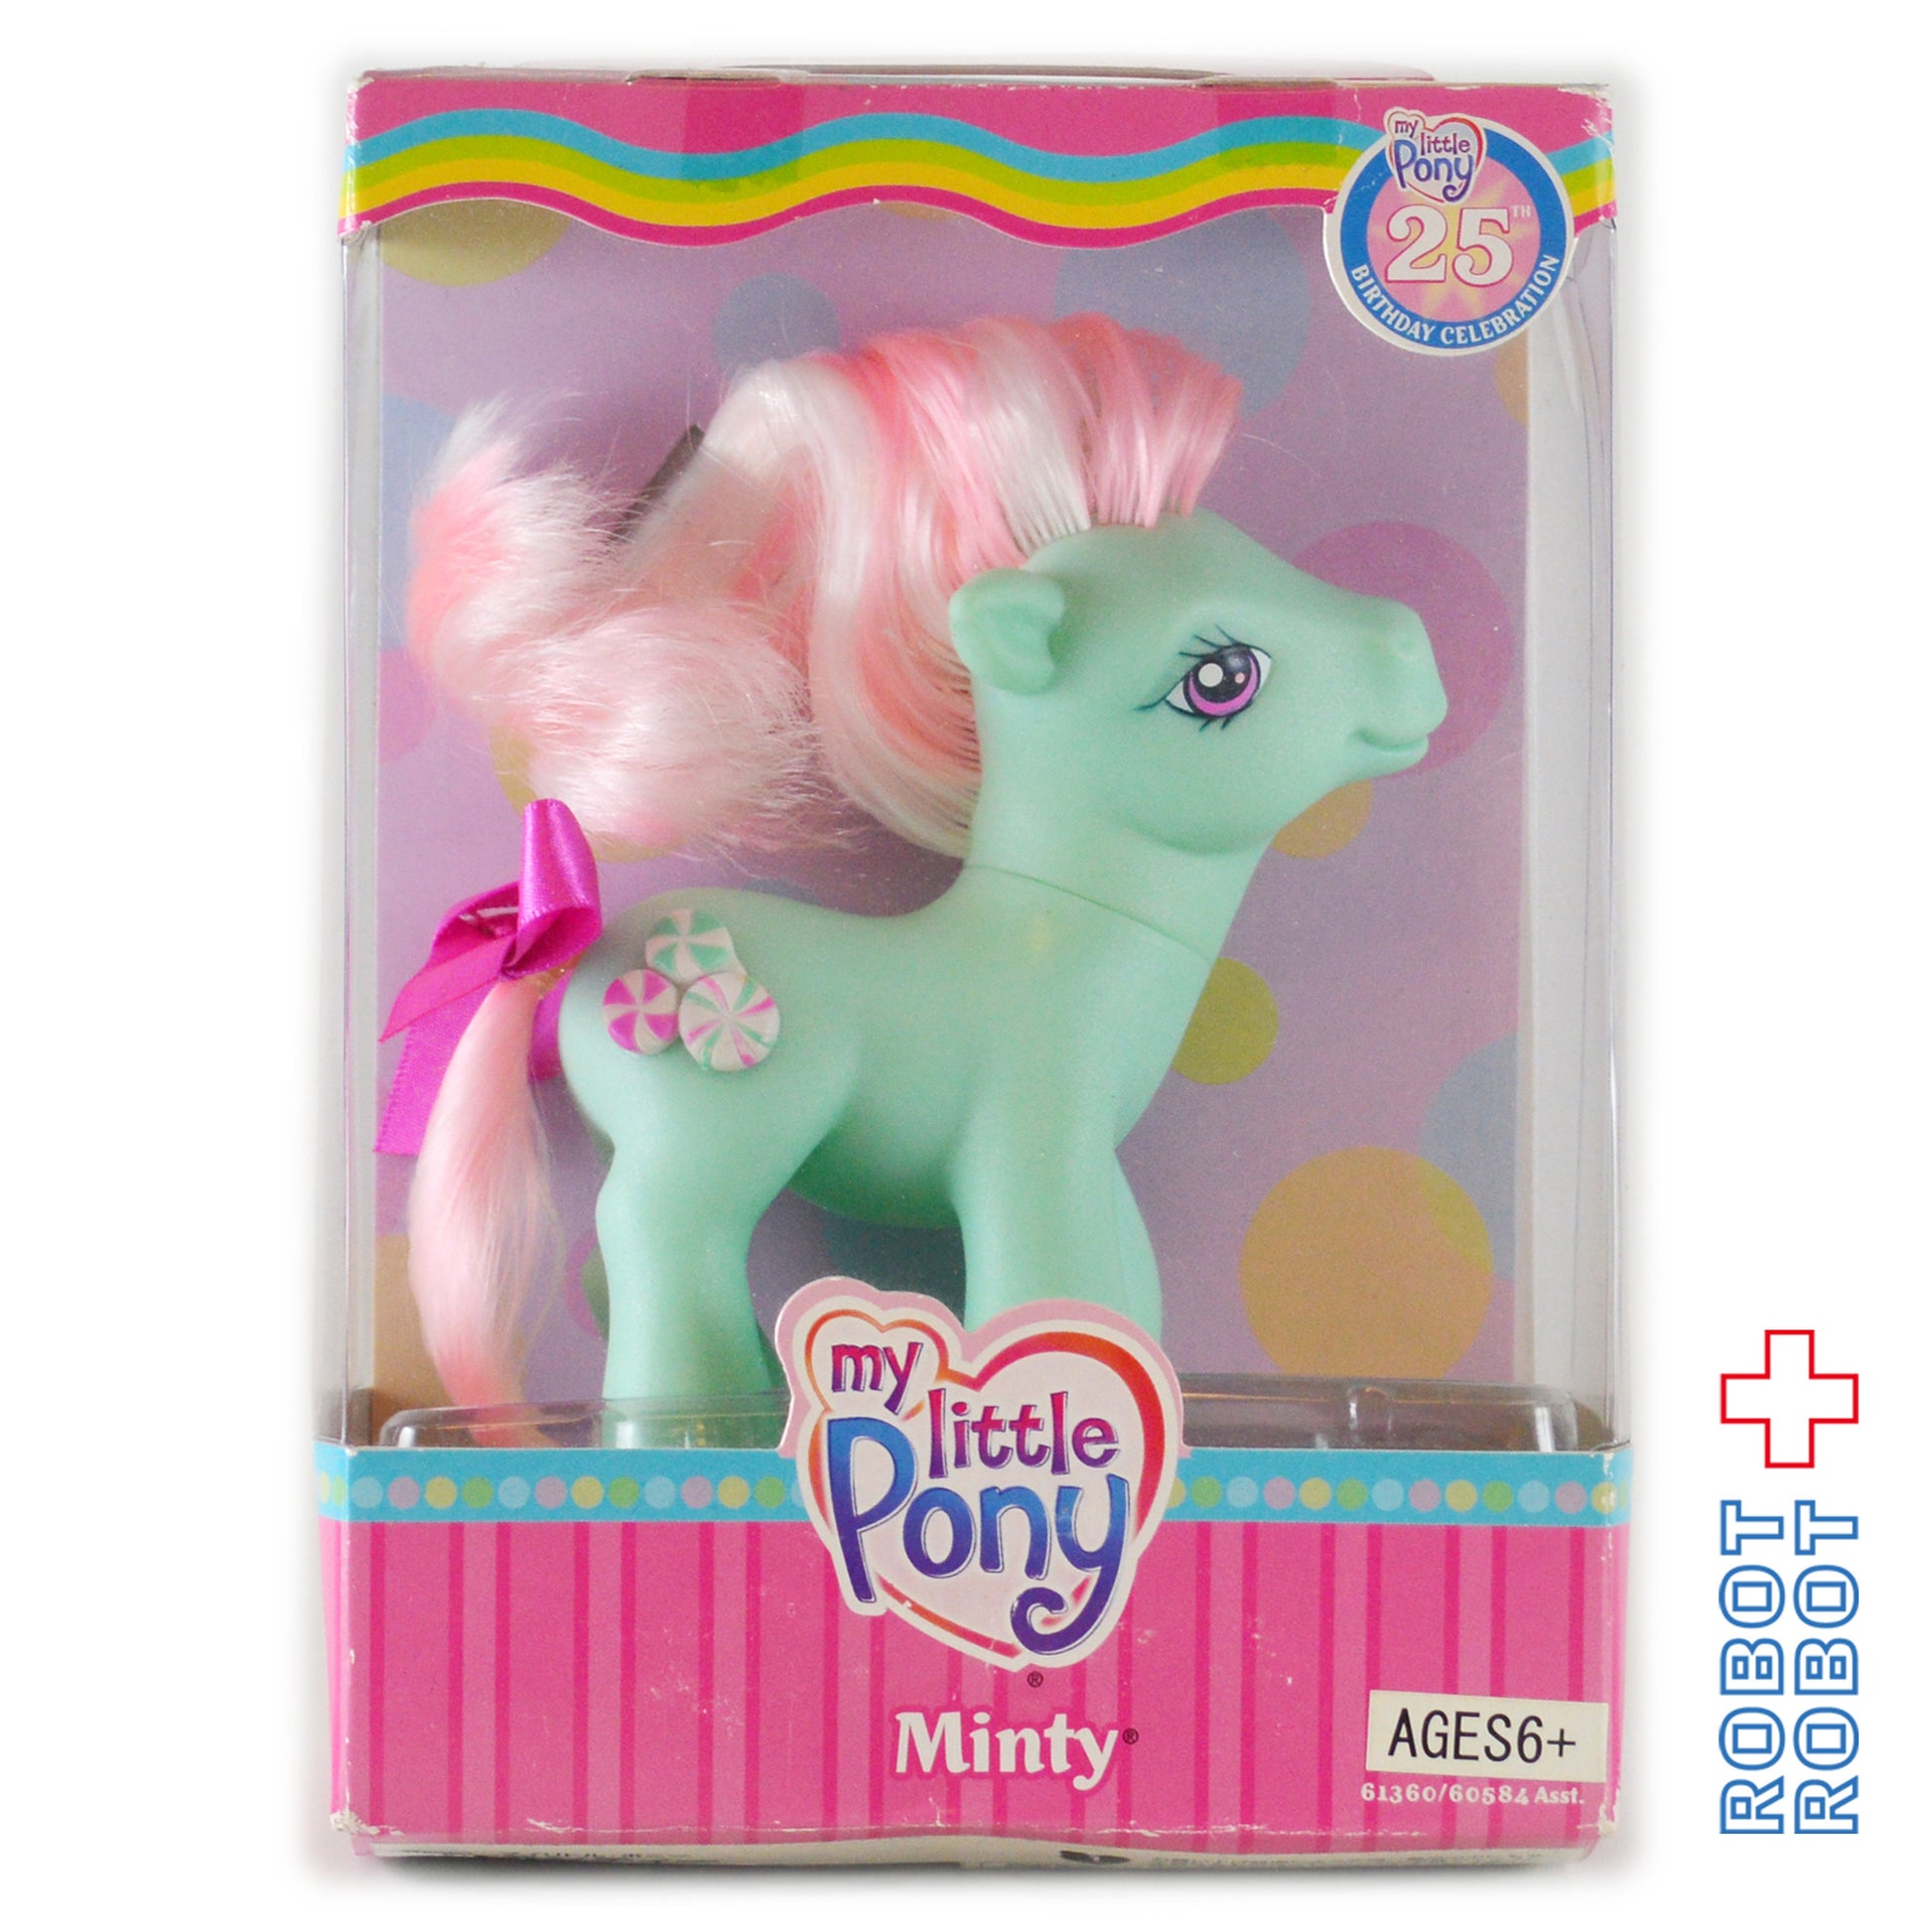 My Little Pony G3 25th Birthday Celebration MINTY